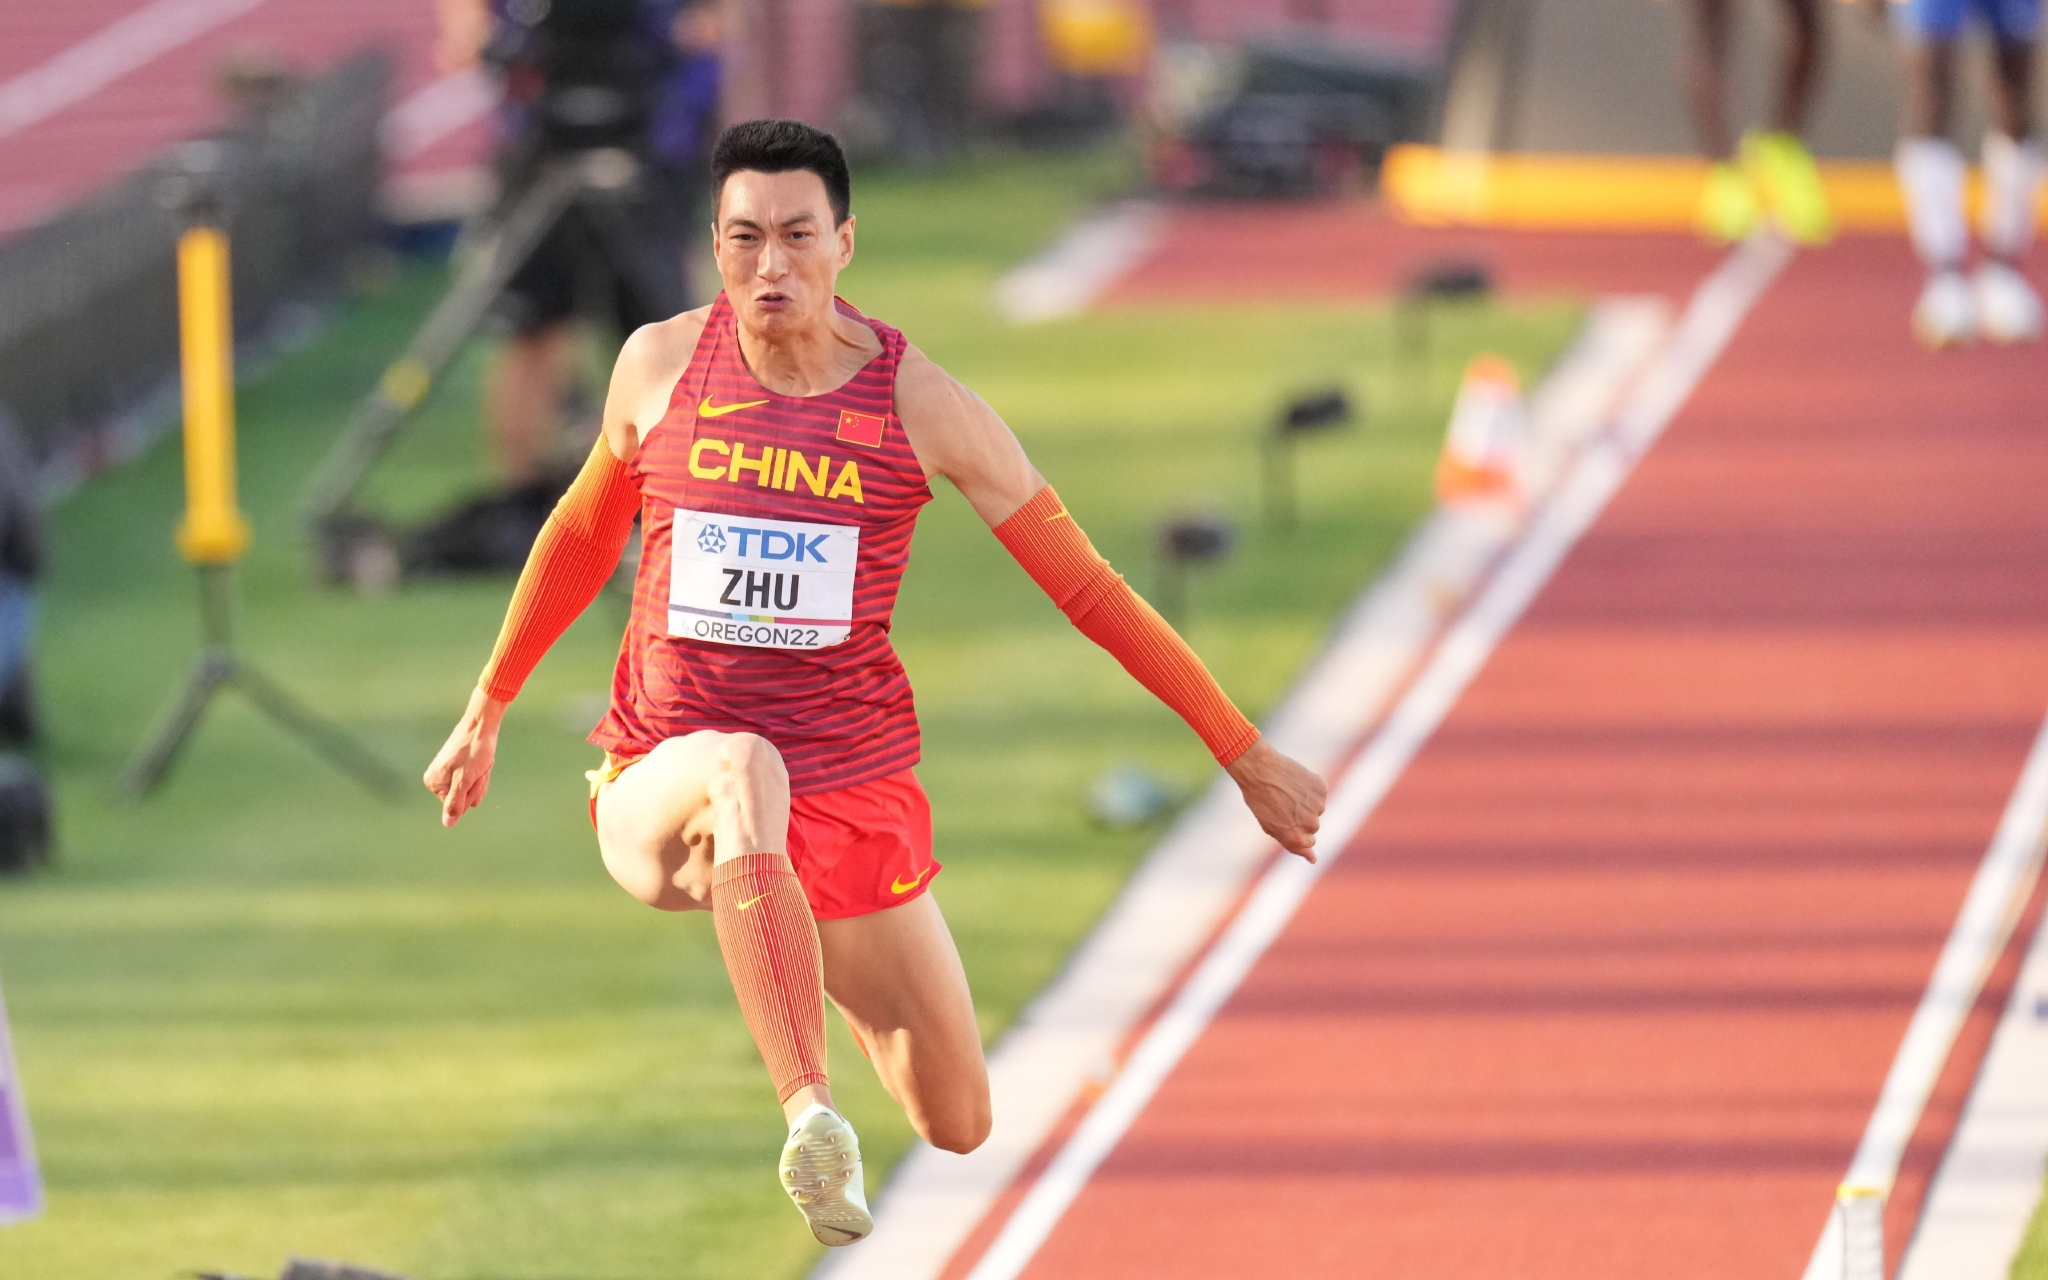 朱亚明为中国男子三级跳远实现世锦赛奖牌零的突破。  新华社记者 吴晓凌 摄